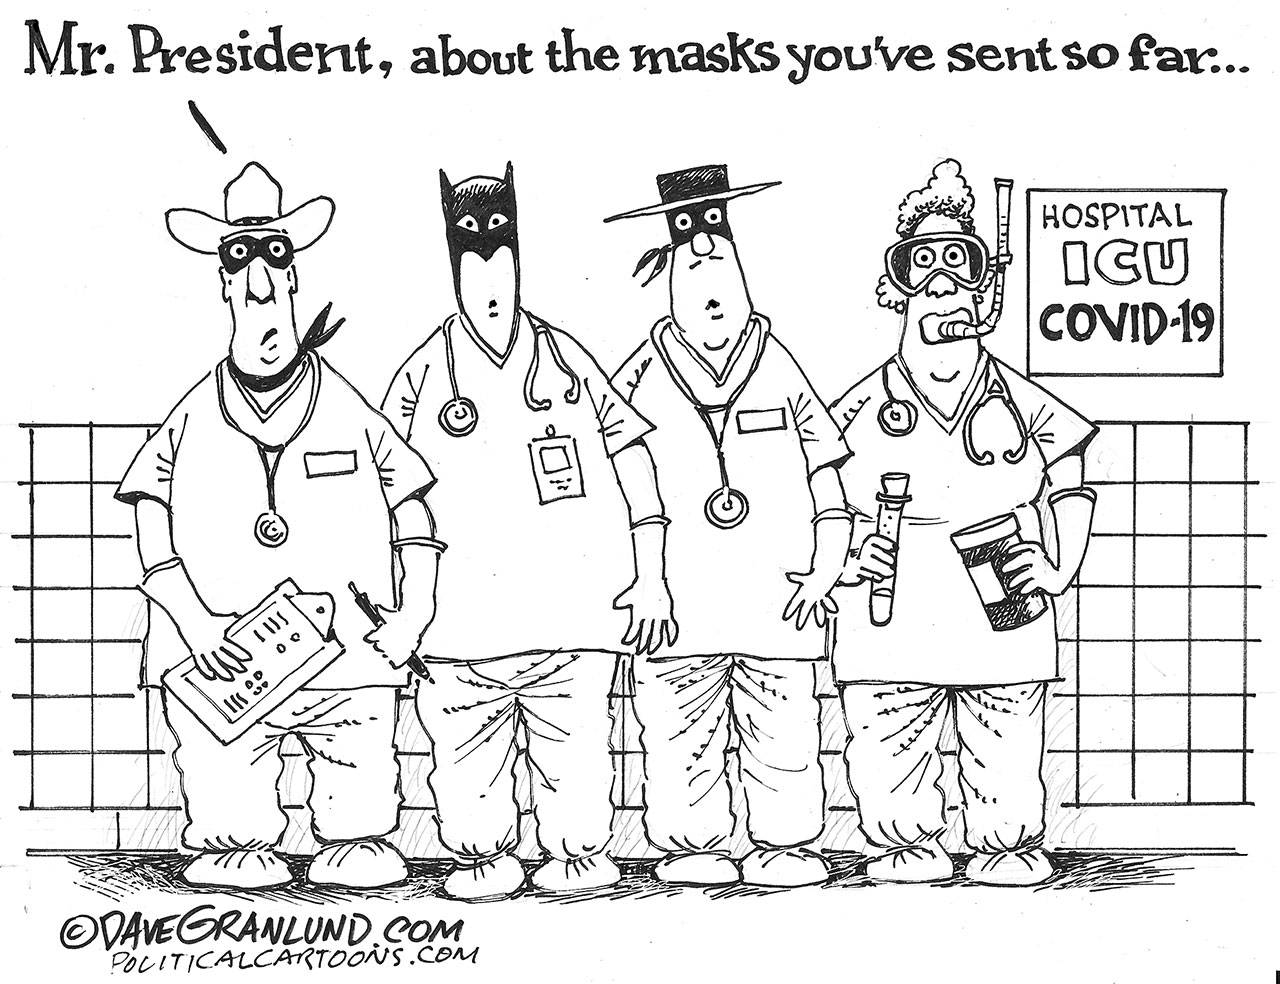 Dave Granlund/PoliticalCartoons.com